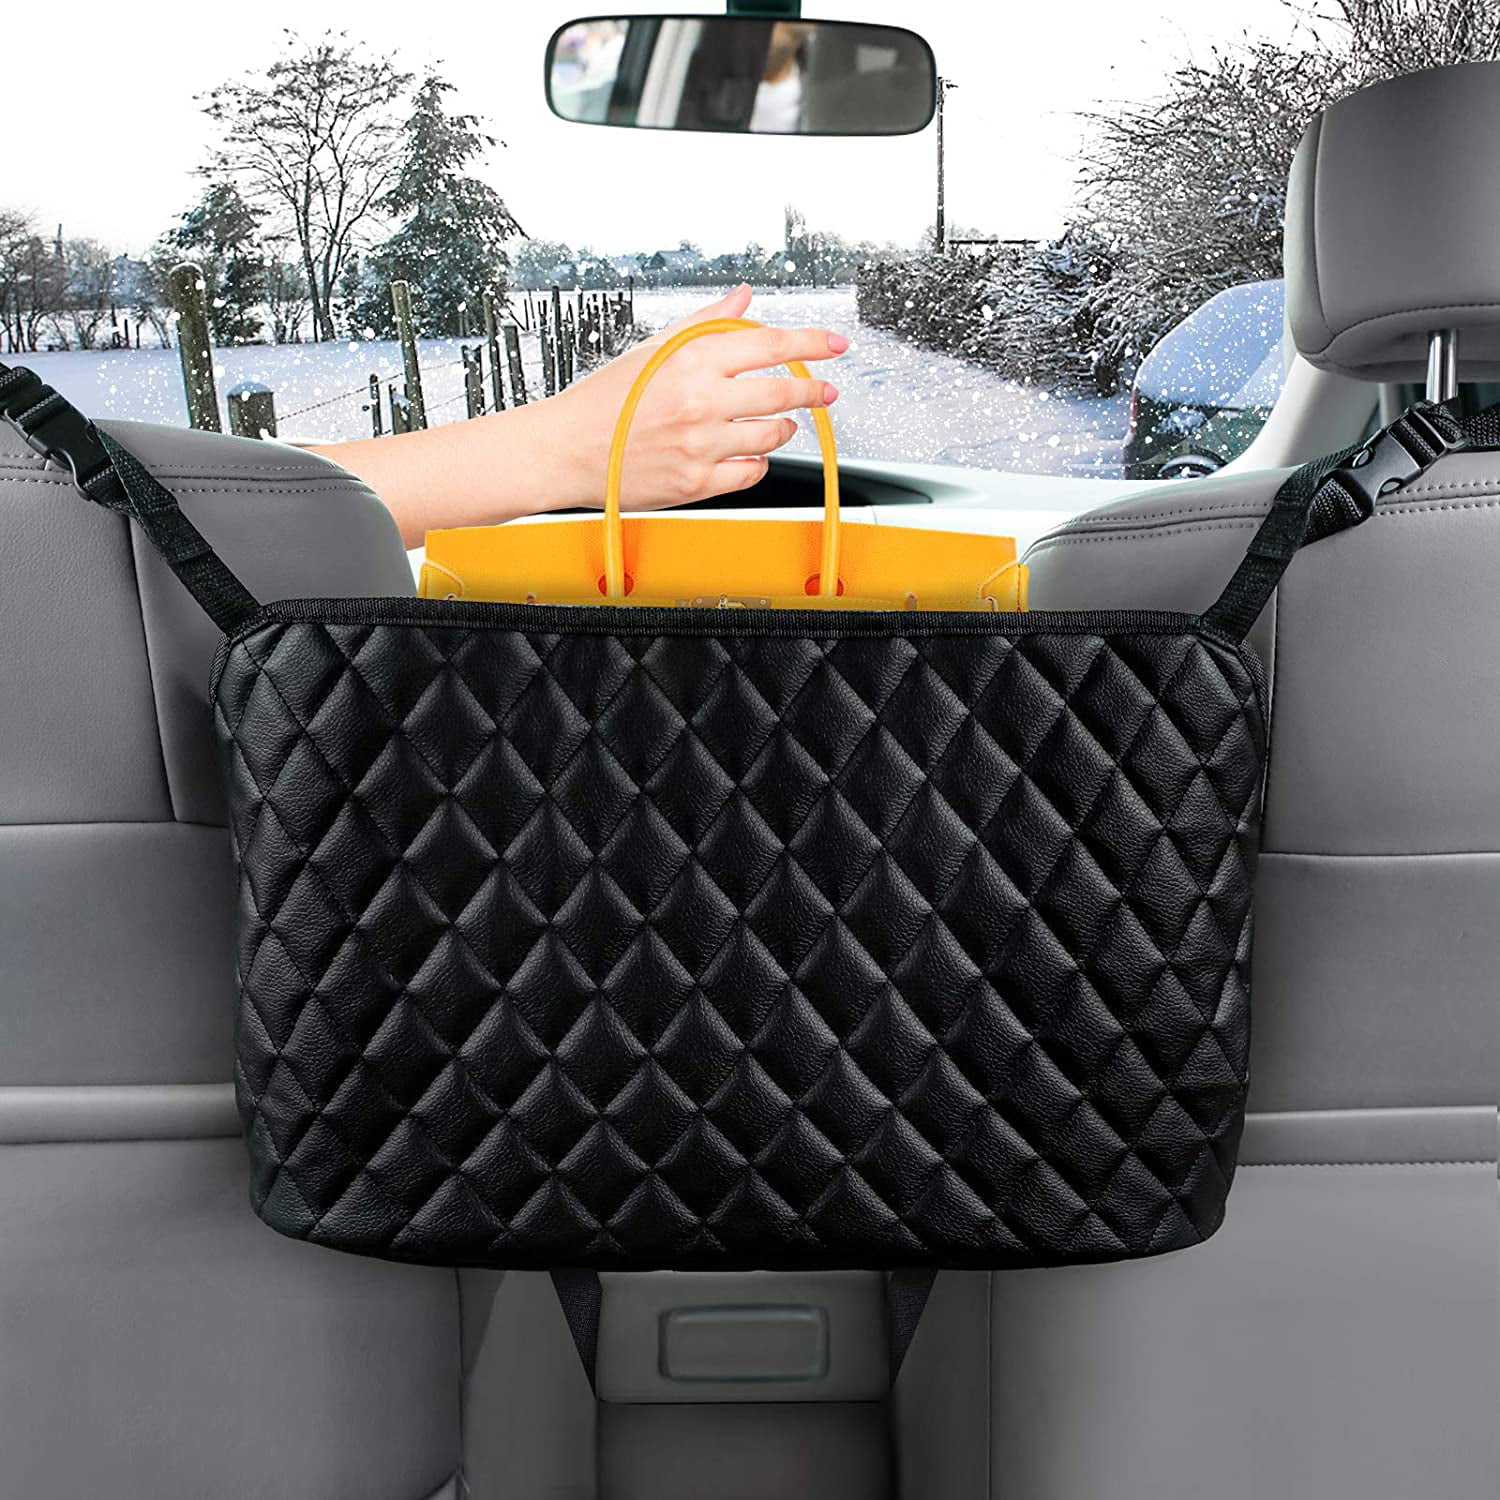 Barrier of Backseat Pet Kids Leather Seat Back Organizer Front Seat Storage Black Car Purse Storage & Pocket Car Handbag Holder 